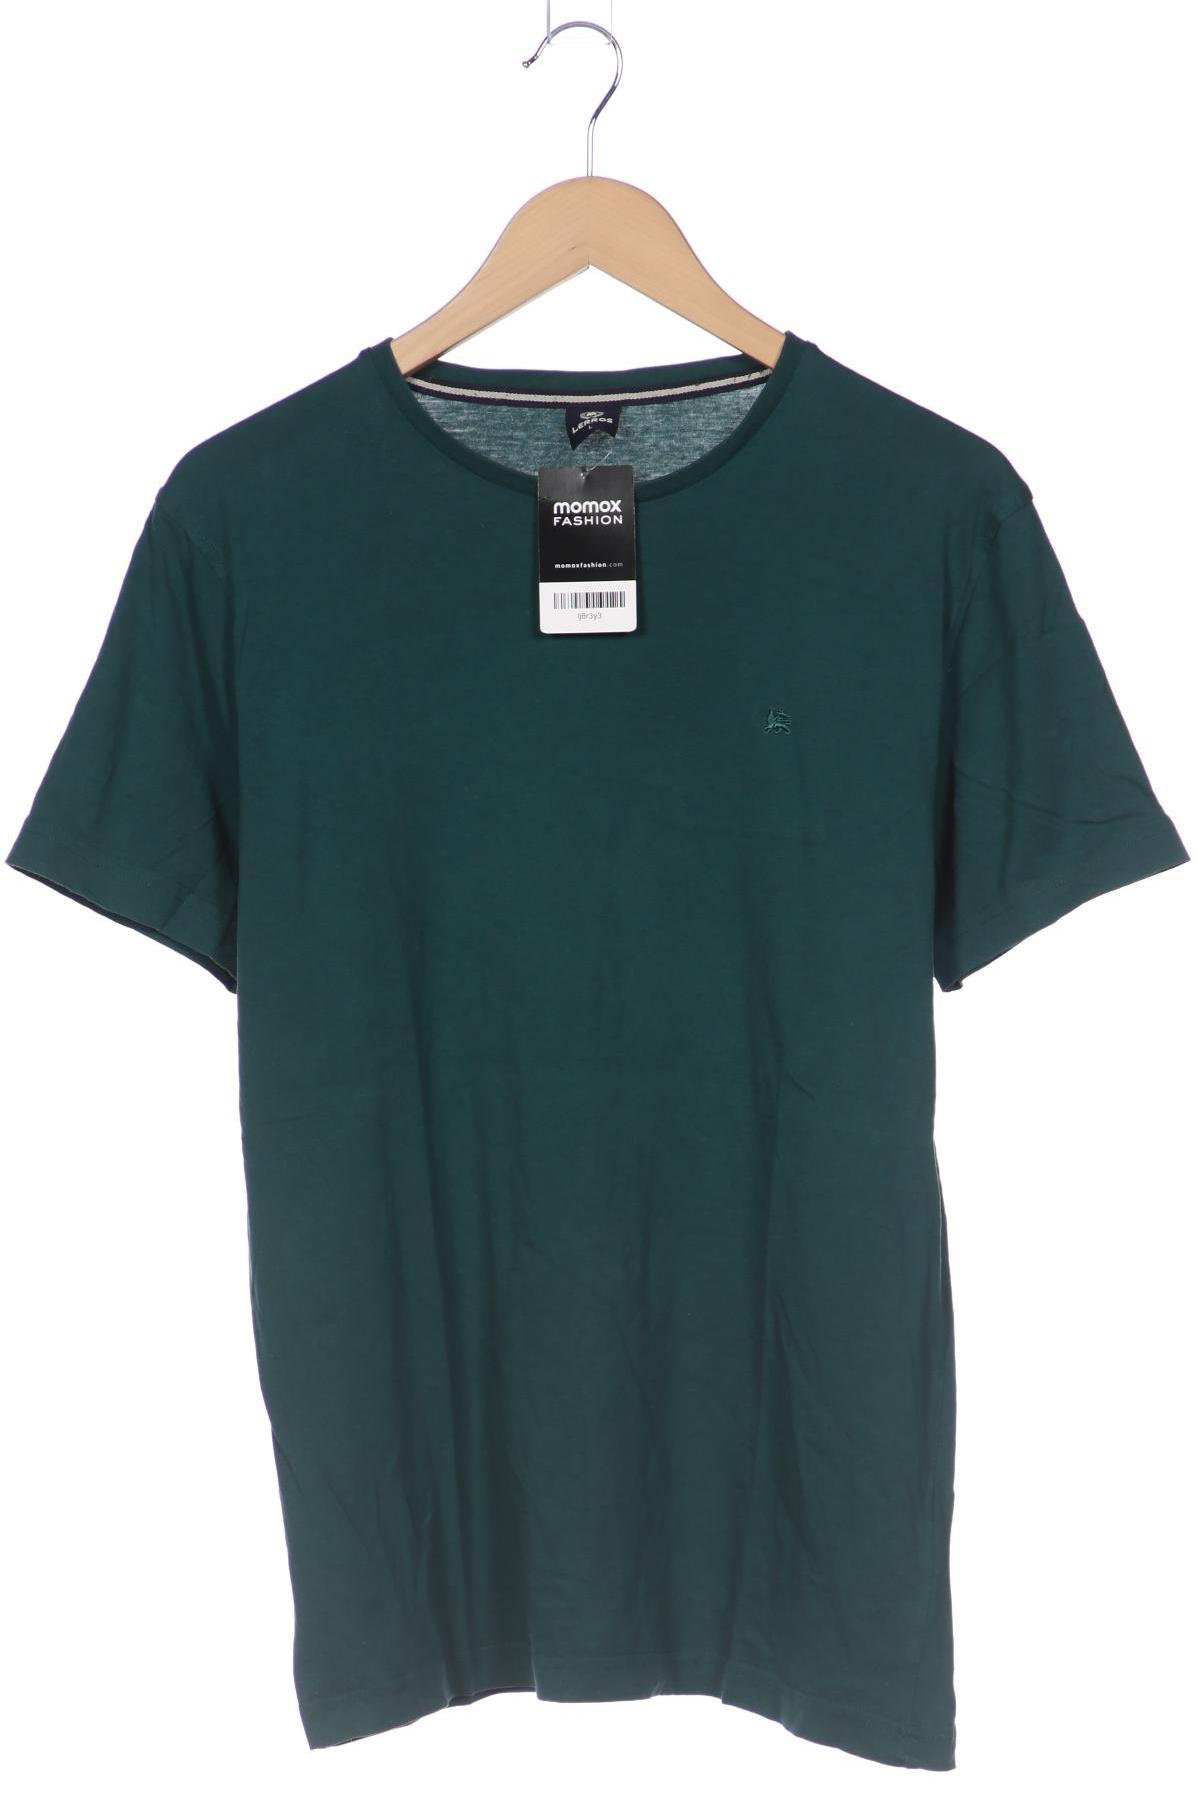 Lerros Herren T-Shirt, grün von Lerros